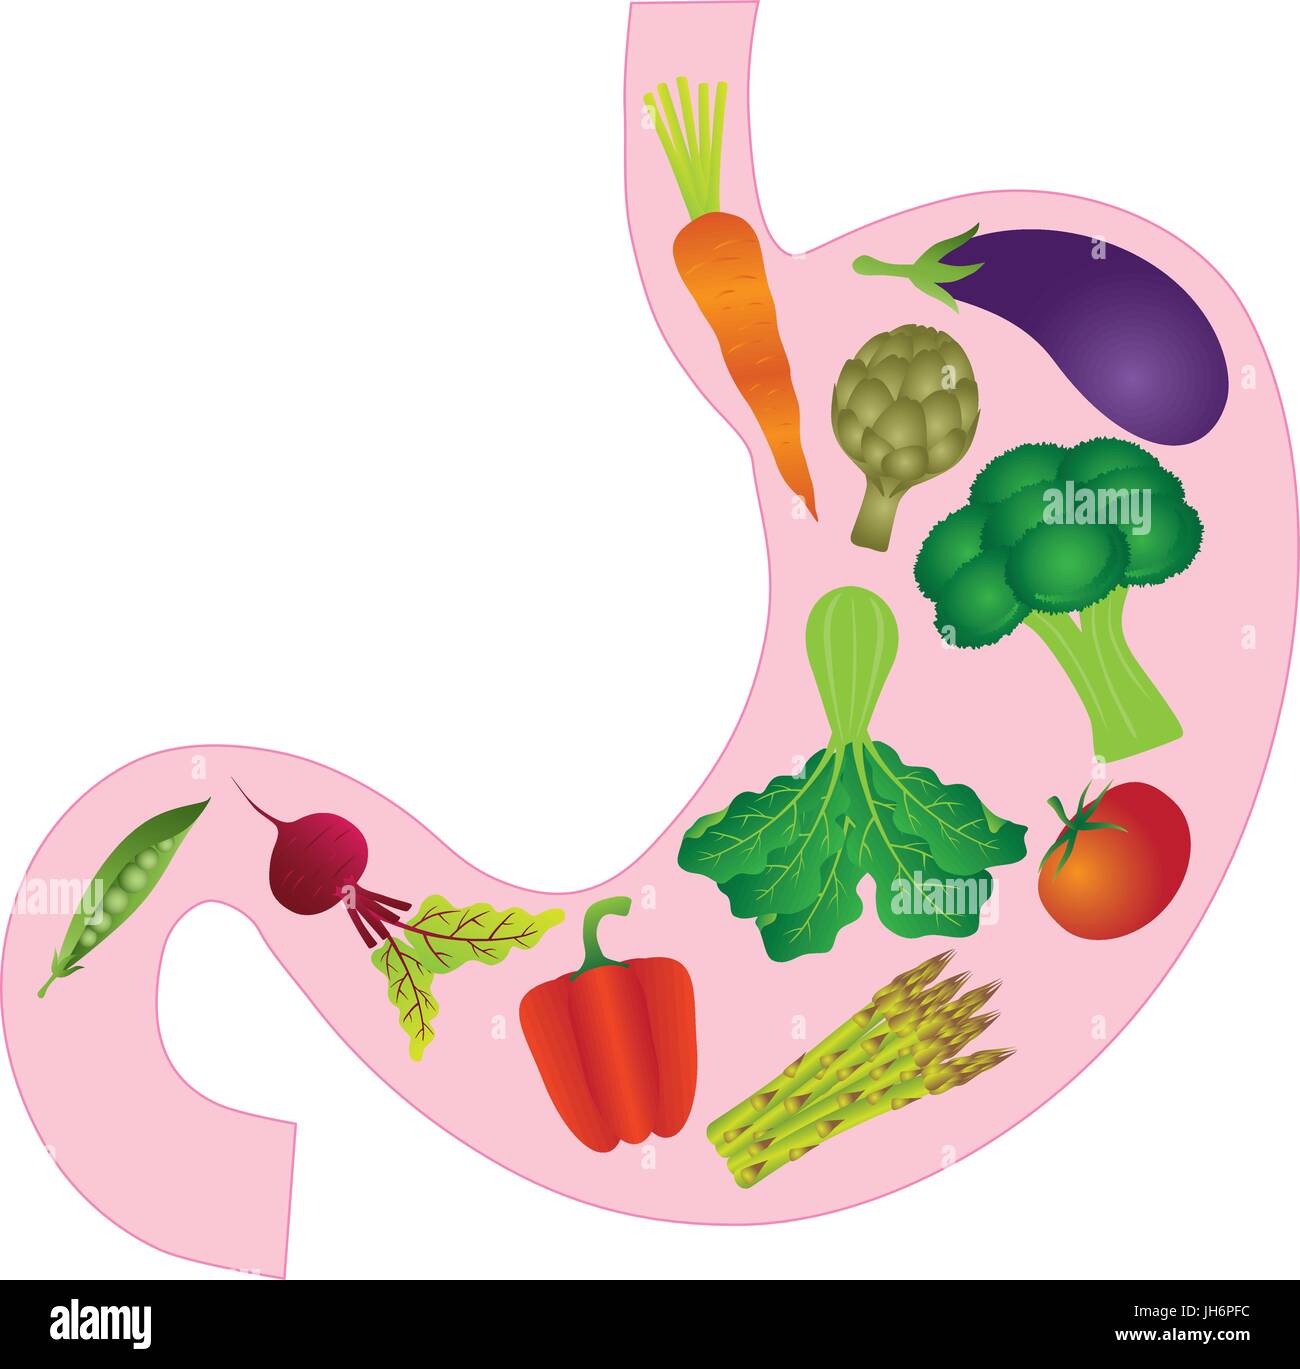 Anatomie de l'estomac humain avec l'Aubergine Carotte Artichaut Asperge Betterave Pois Poivrons Tomates Légumes vert Illustration Couleur Illustration de Vecteur